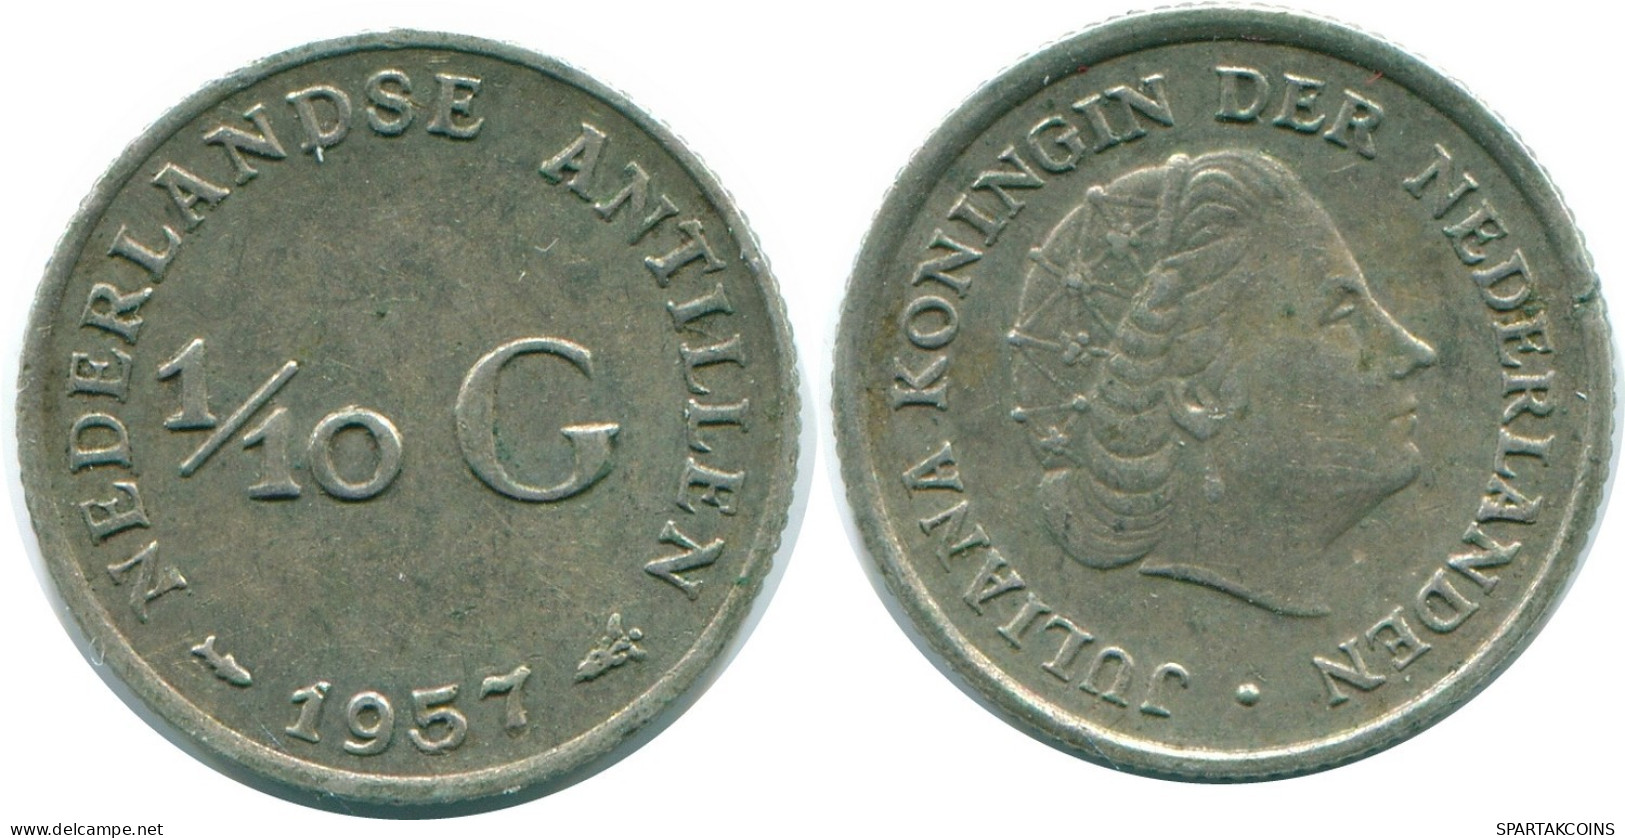 1/10 GULDEN 1957 NIEDERLÄNDISCHE ANTILLEN SILBER Koloniale Münze #NL12168.3.D.A - Antille Olandesi